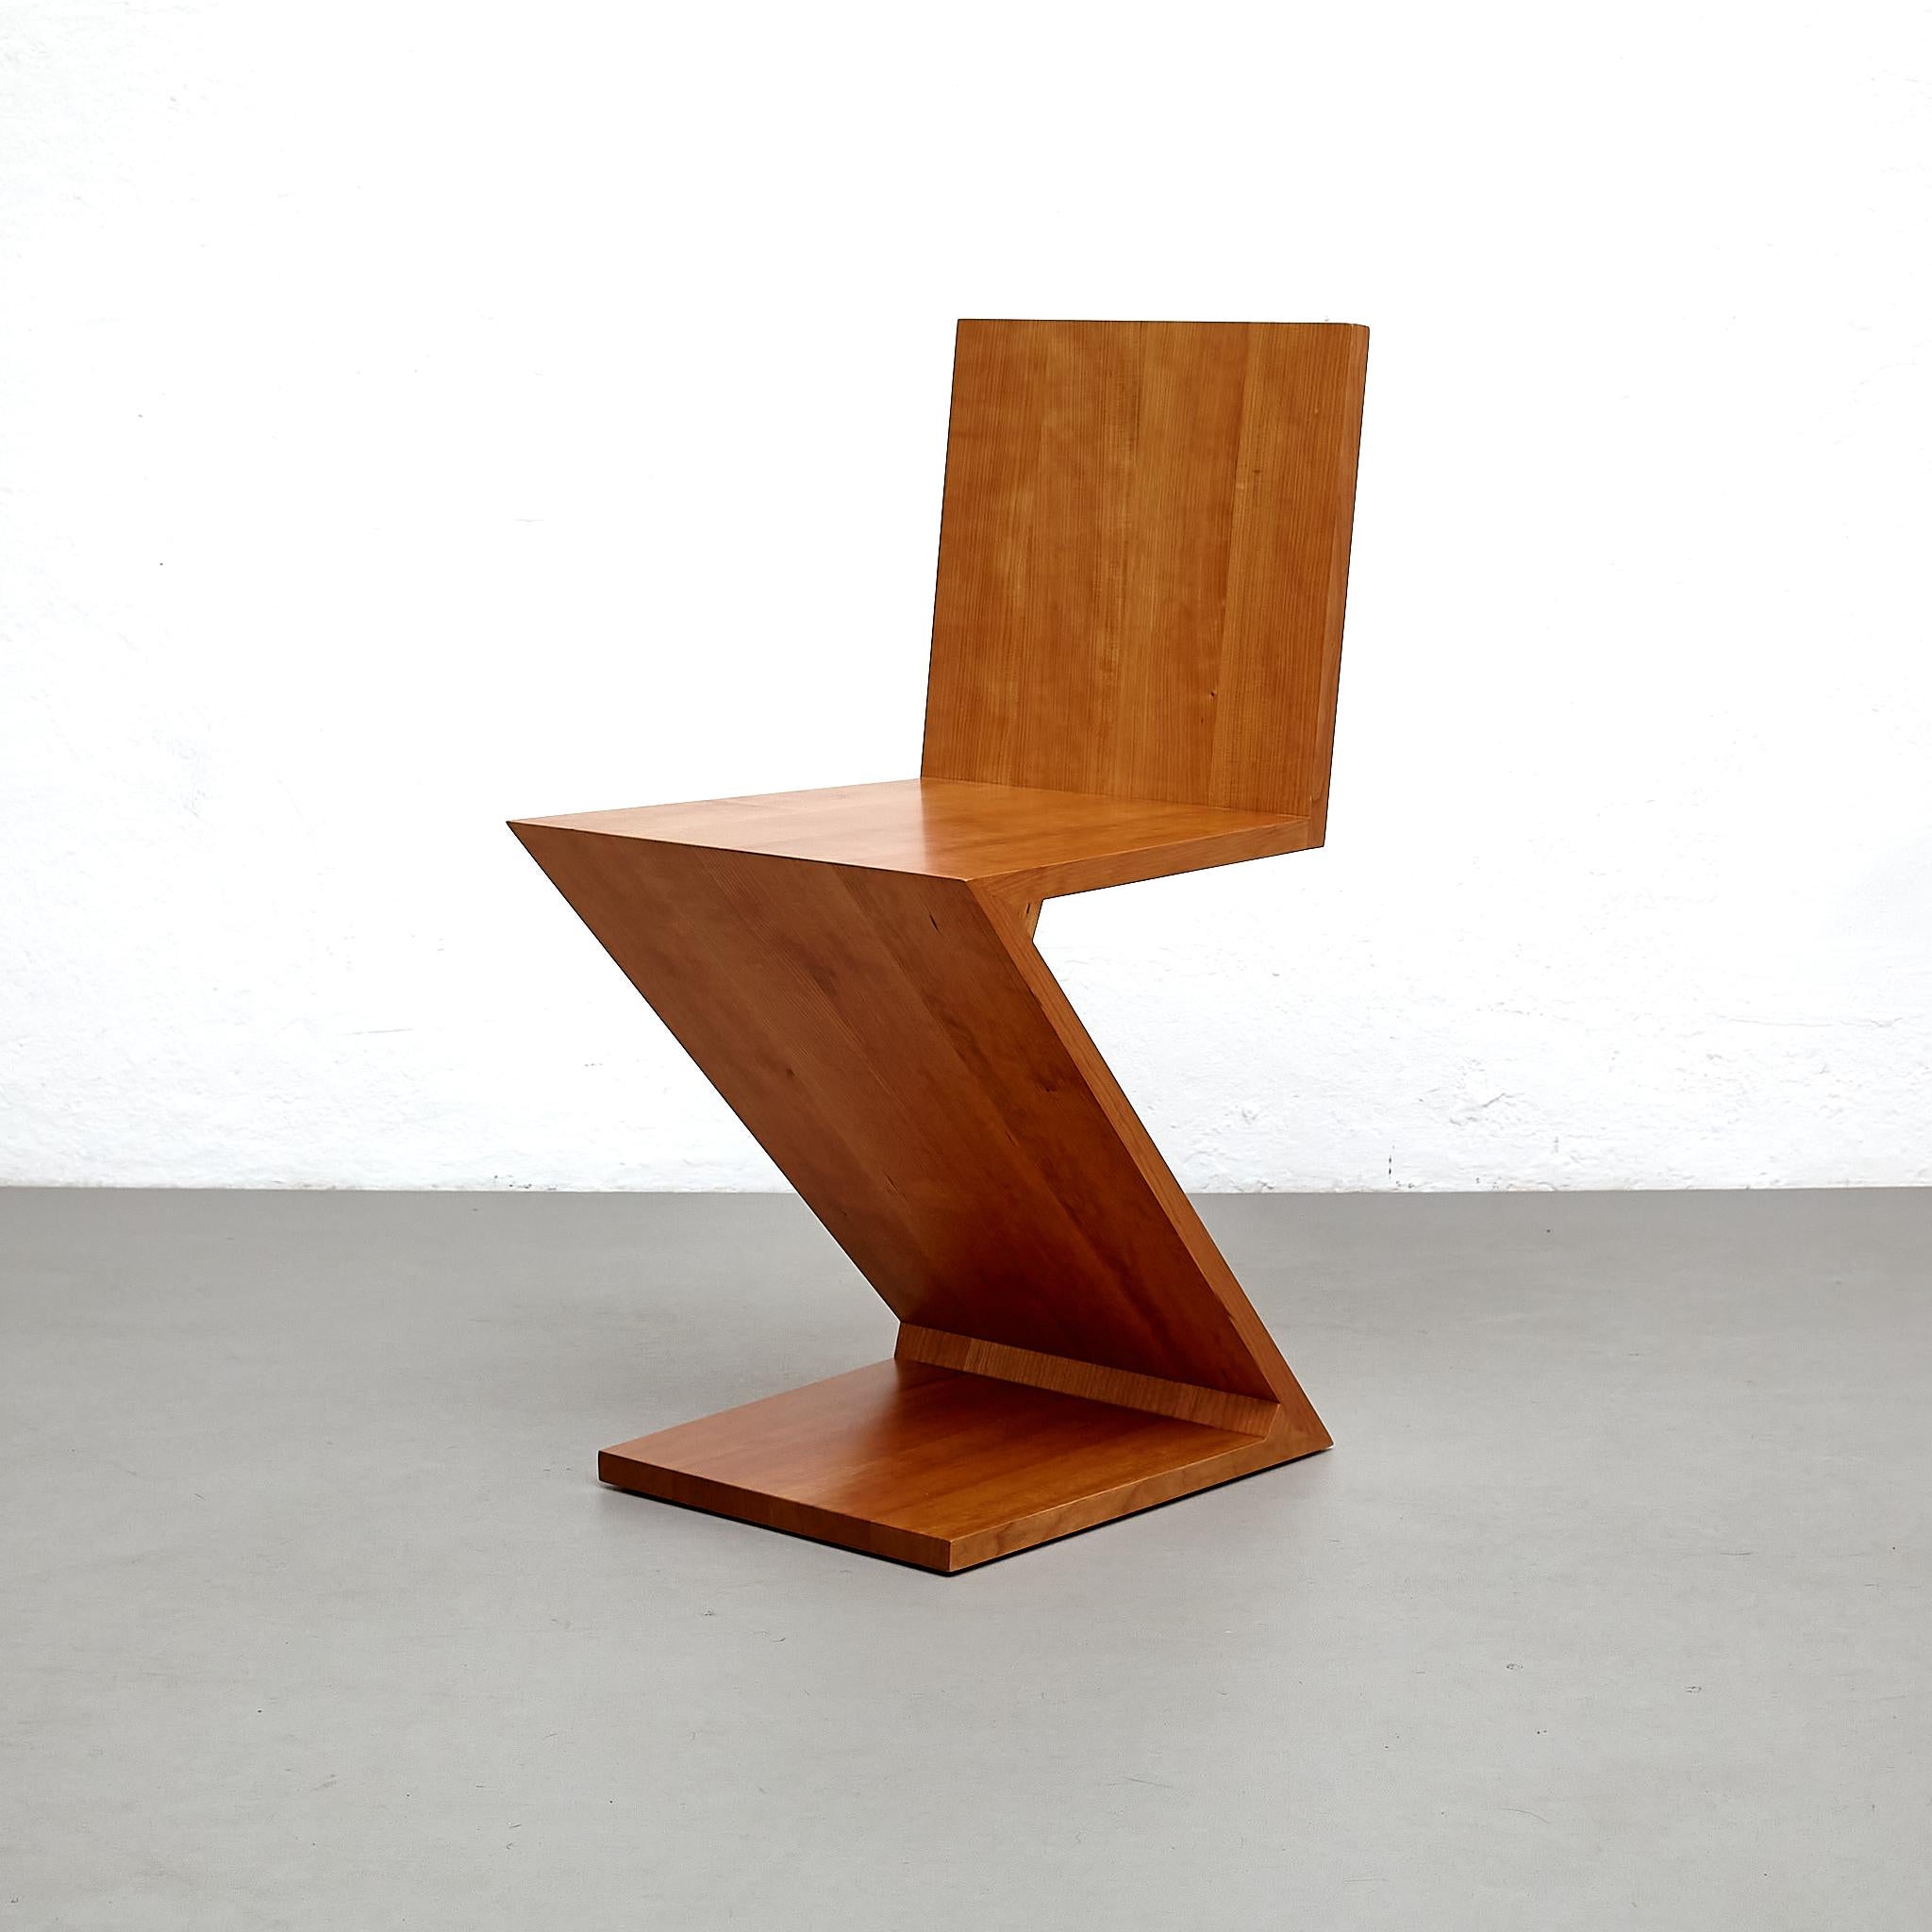 Chaise conçue par Gerrit Thomas Rietveld en 1934. Relancé en 1973/ 2011.

Fabriqué par Cassina en Italie.

Matériaux :
Bois
 
Dimensions :
D 43 cm x L 37 cm x H 74 cm (SH 43 cm)

Conçue par Gerrit Rietveld, cette chaise est un des premiers